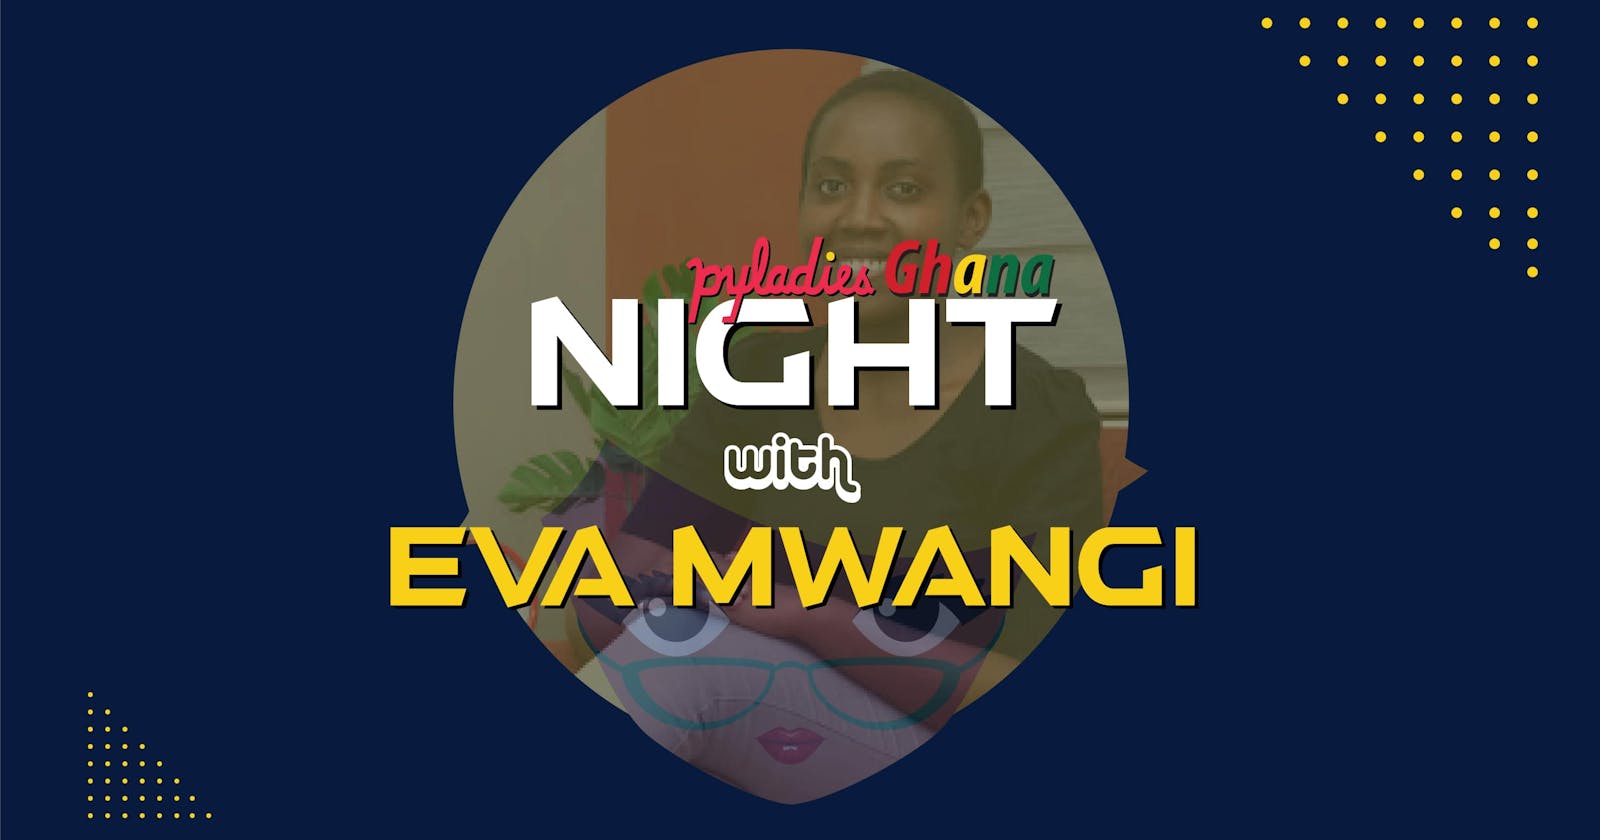 PyLadies Night with Eva Mwangi